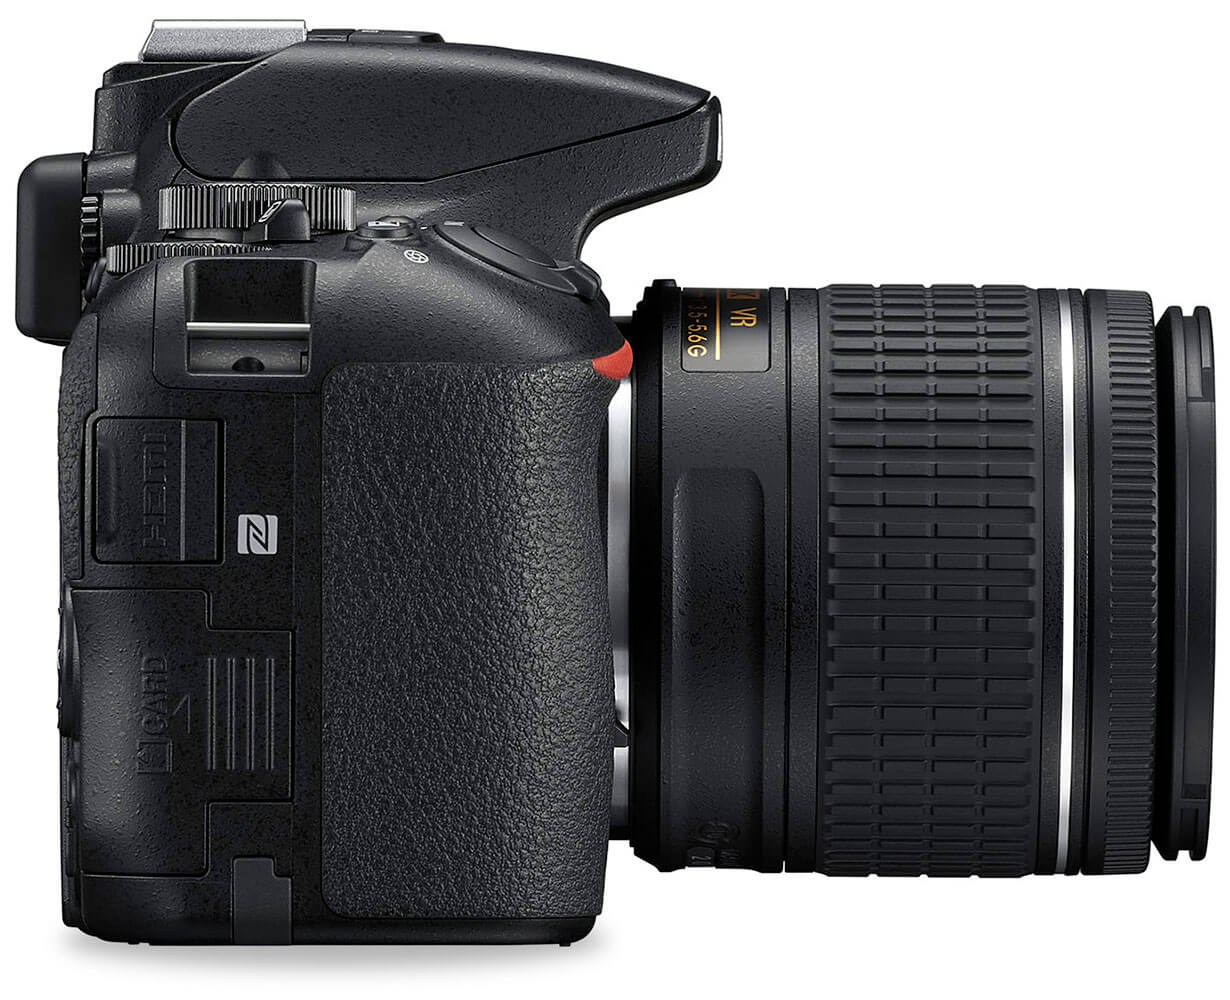 Vista lateral de una cámara réflex digital Nikon con puntos de concentración que indican diferentes funciones.